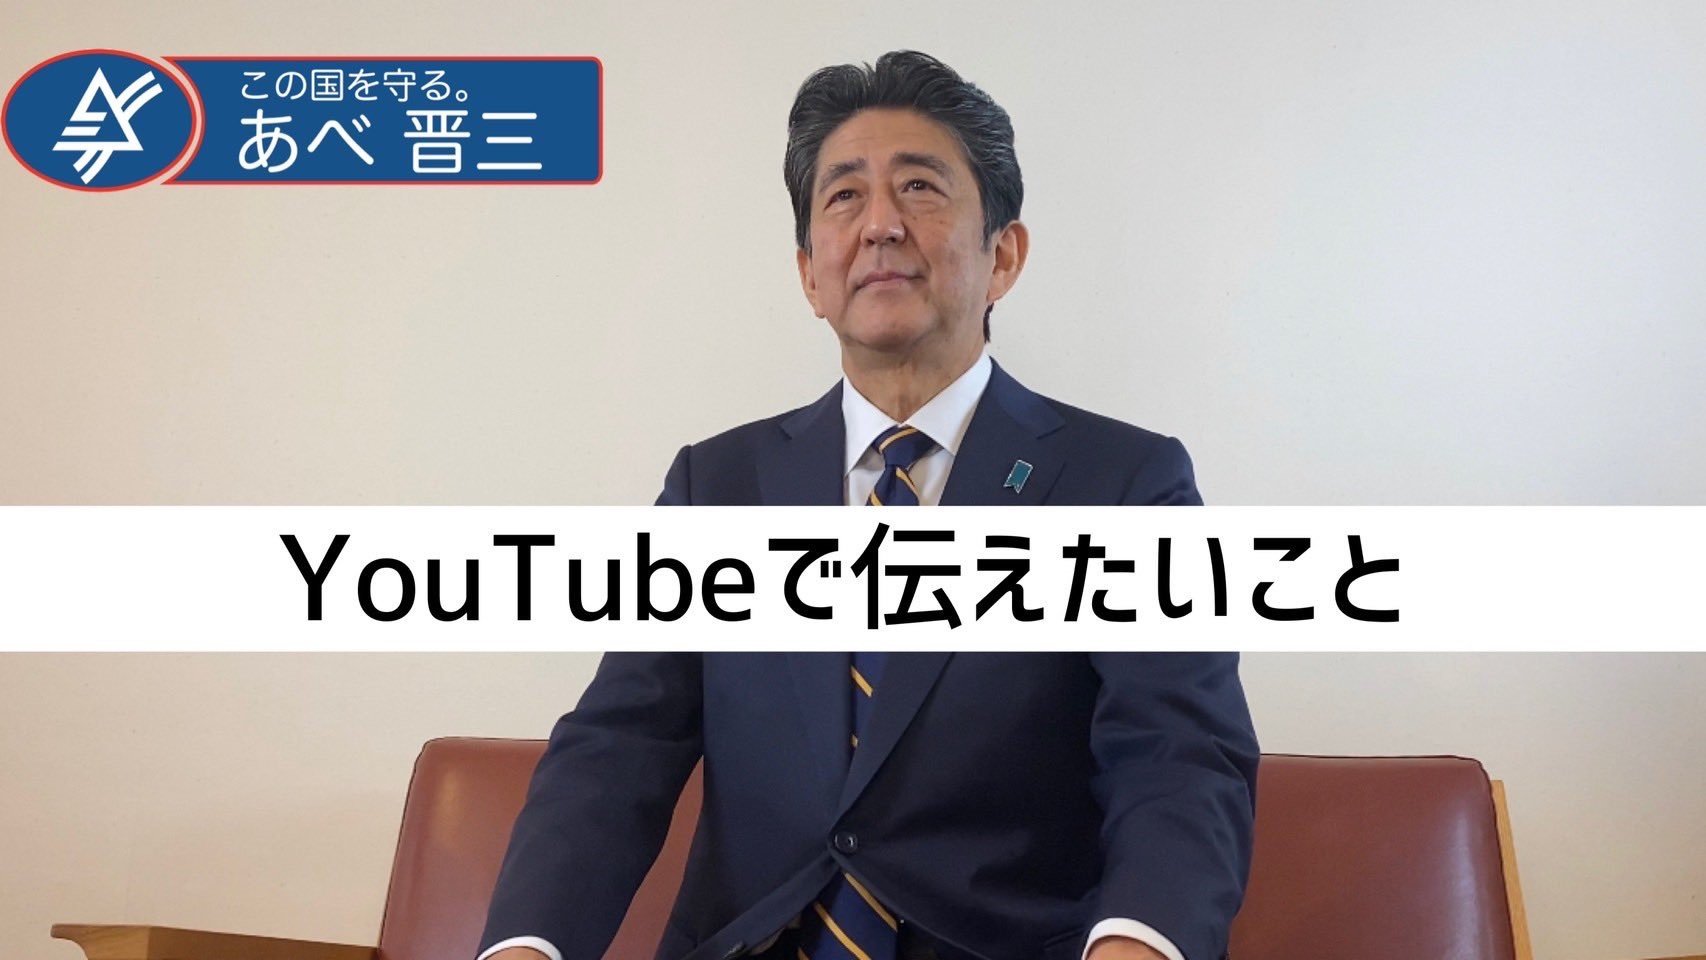 安倍晋三元首相 Youtubeチャンネルを開設 今までのやり方を変えなければいけない Itmedia News